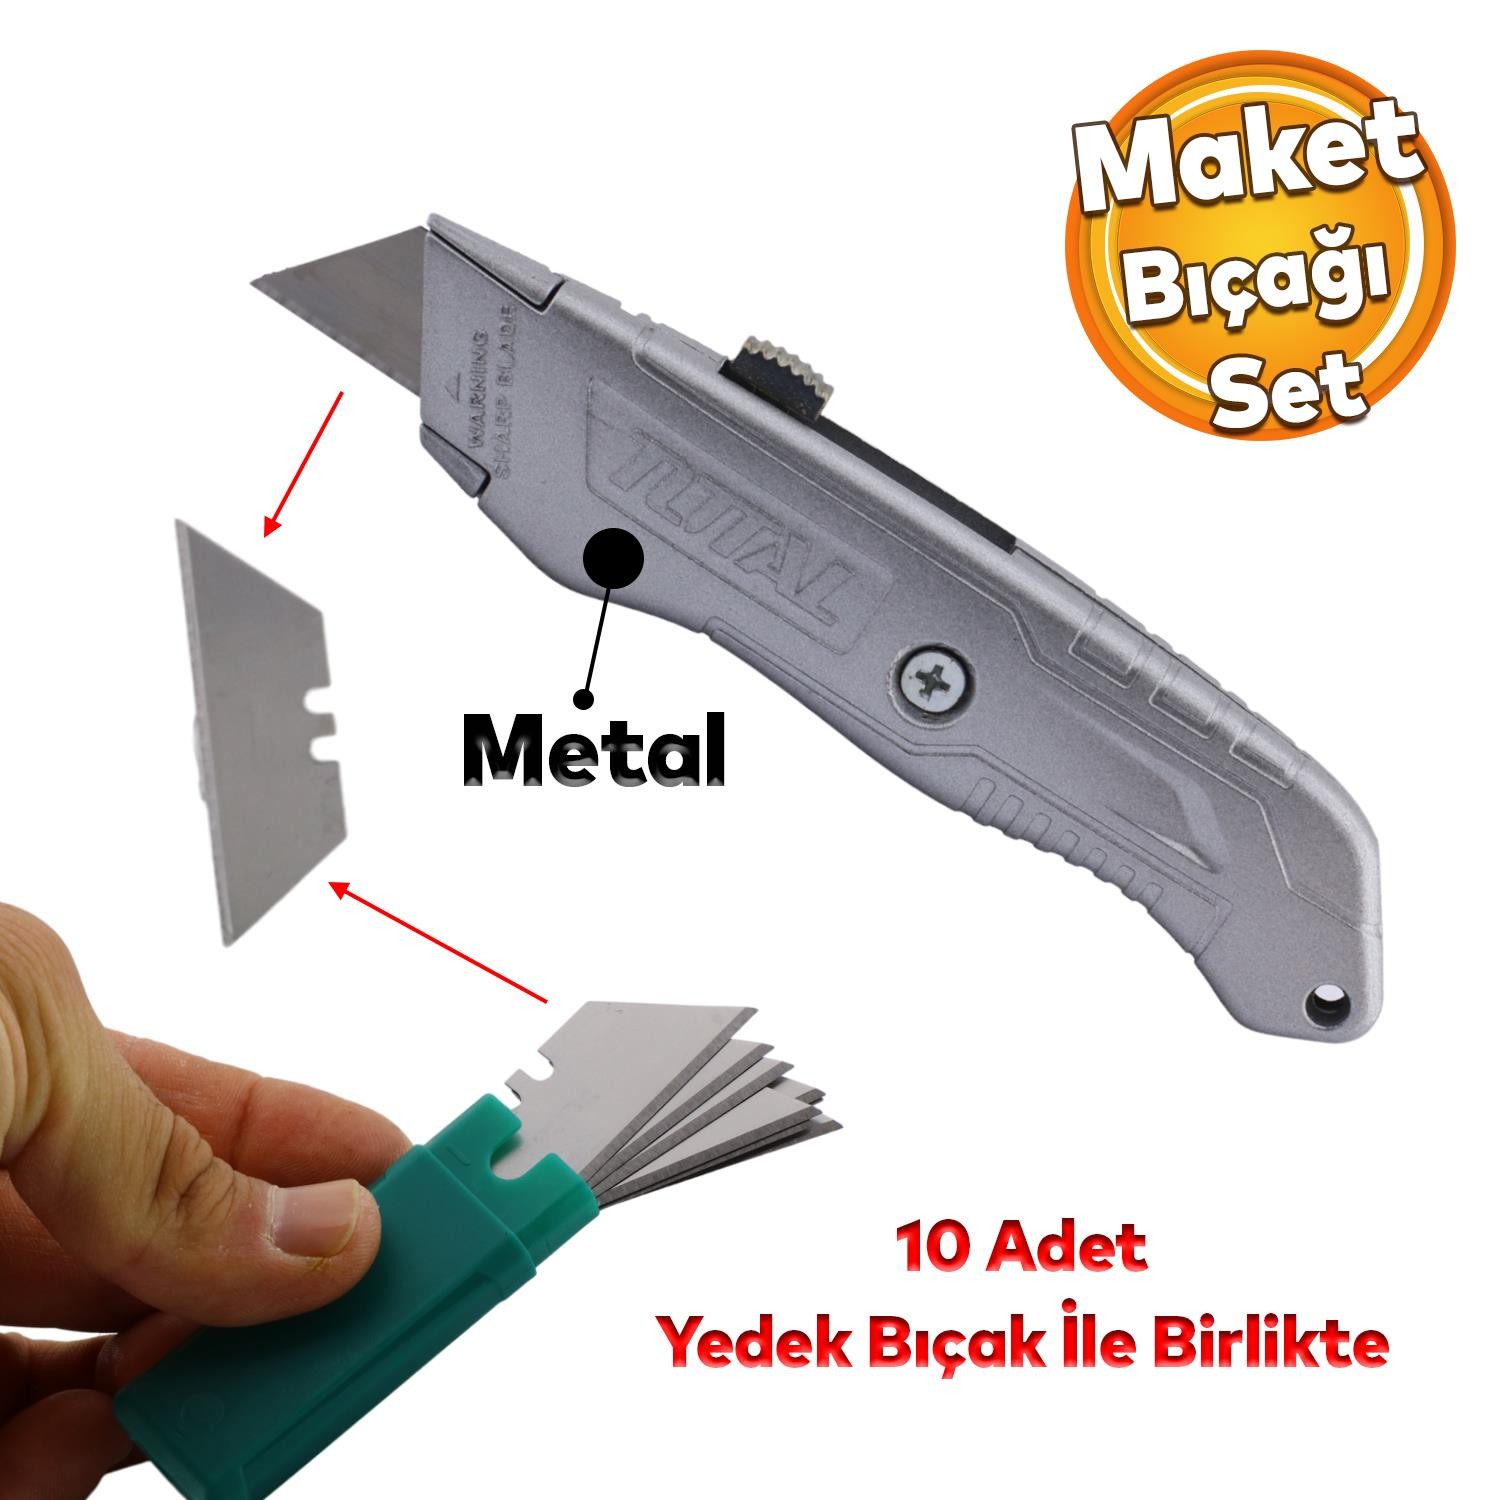 Metal Maket Bıçak Halı Bıçağı Çok Amaçlı Maket Bıçağı Küçük Değiştirilebilir 10 Adet Yedek Bıçak